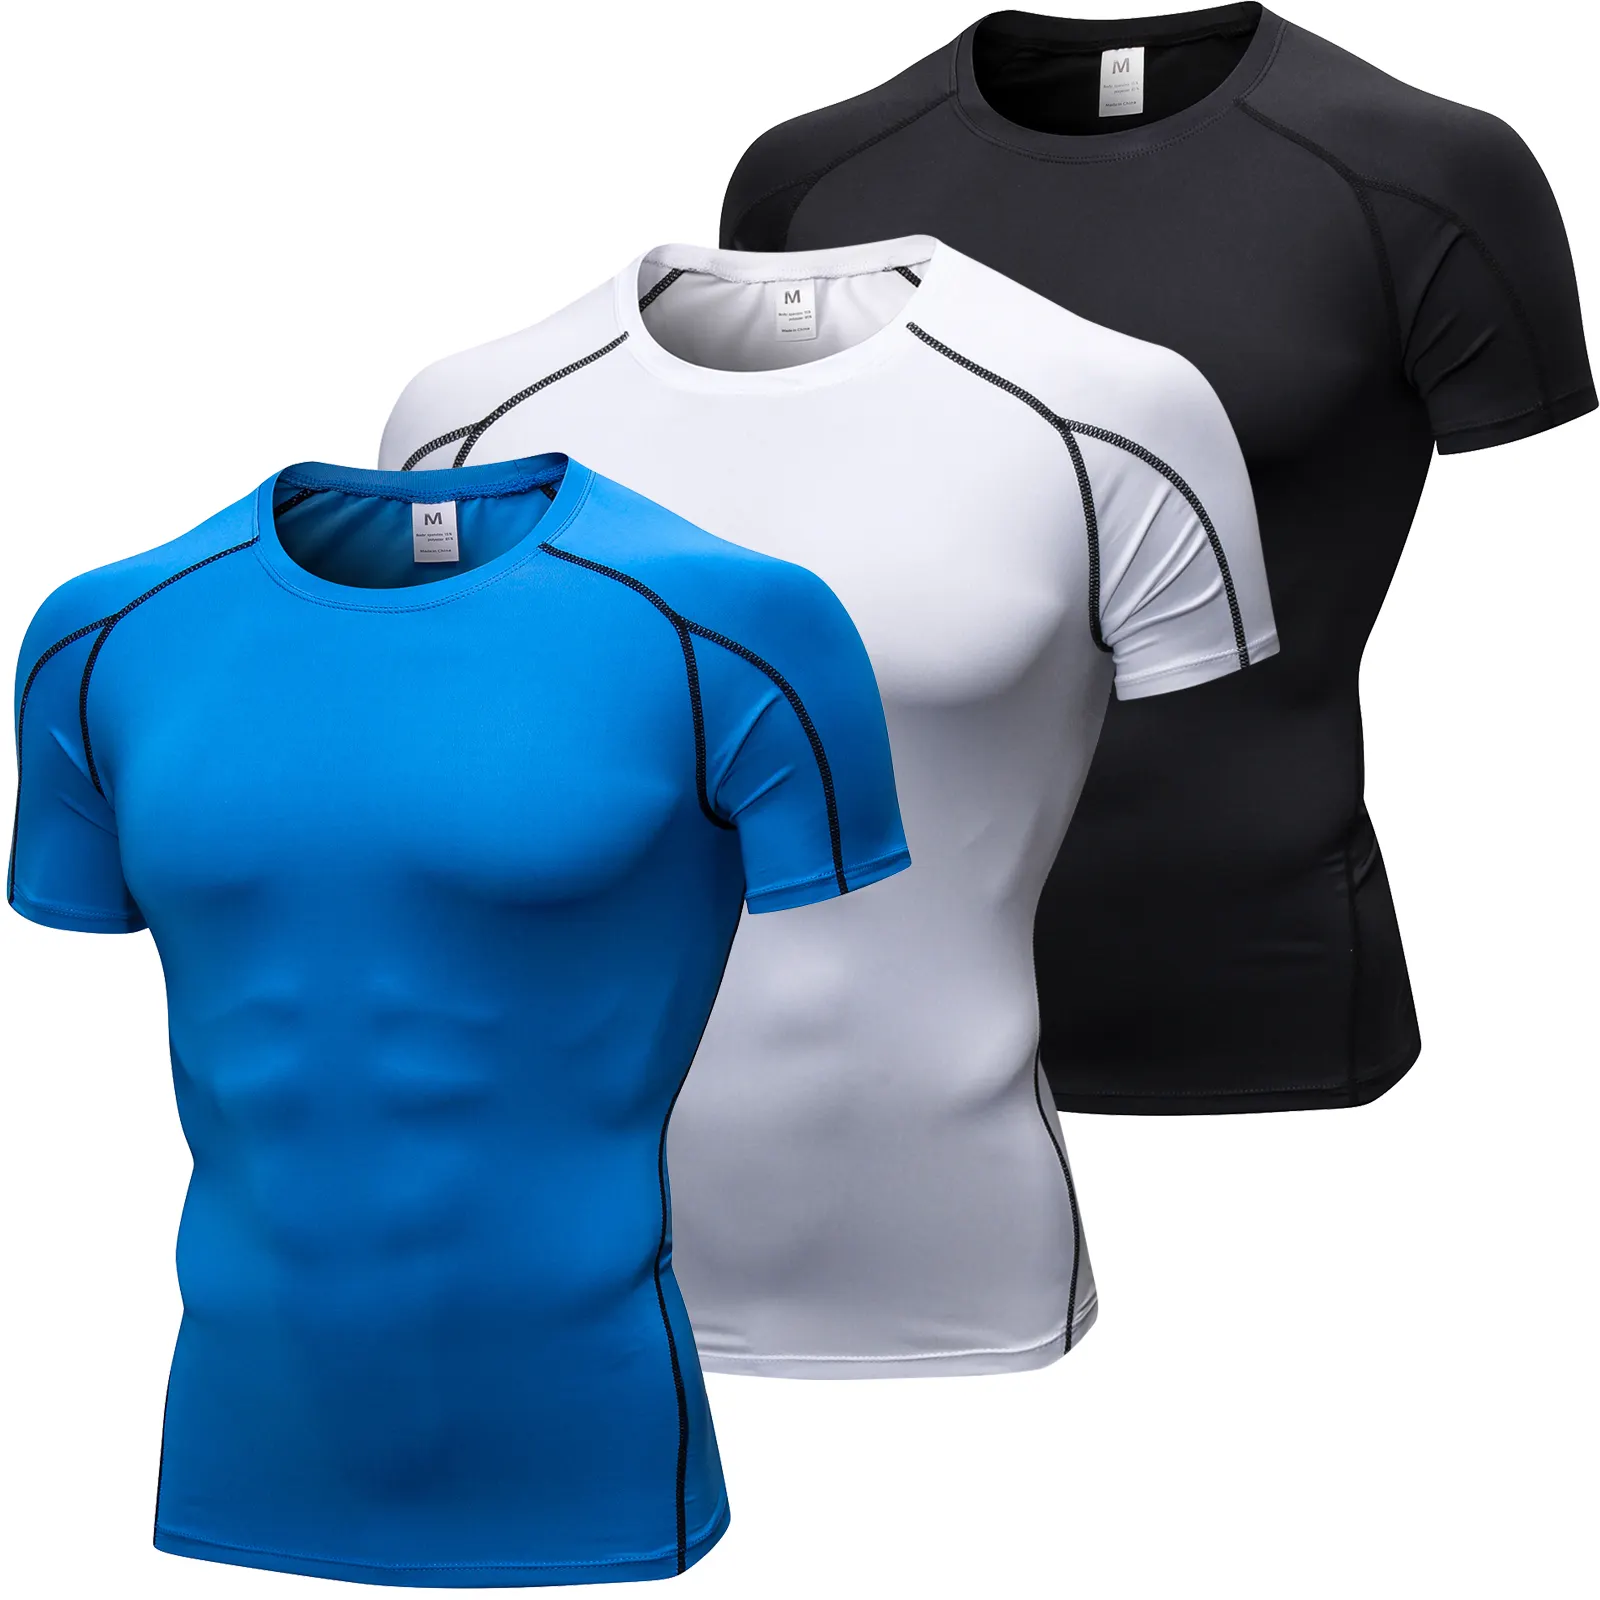 Toptan atletik egzersiz koşu spor giyim hızlı Fit spor Mens spor T shirt